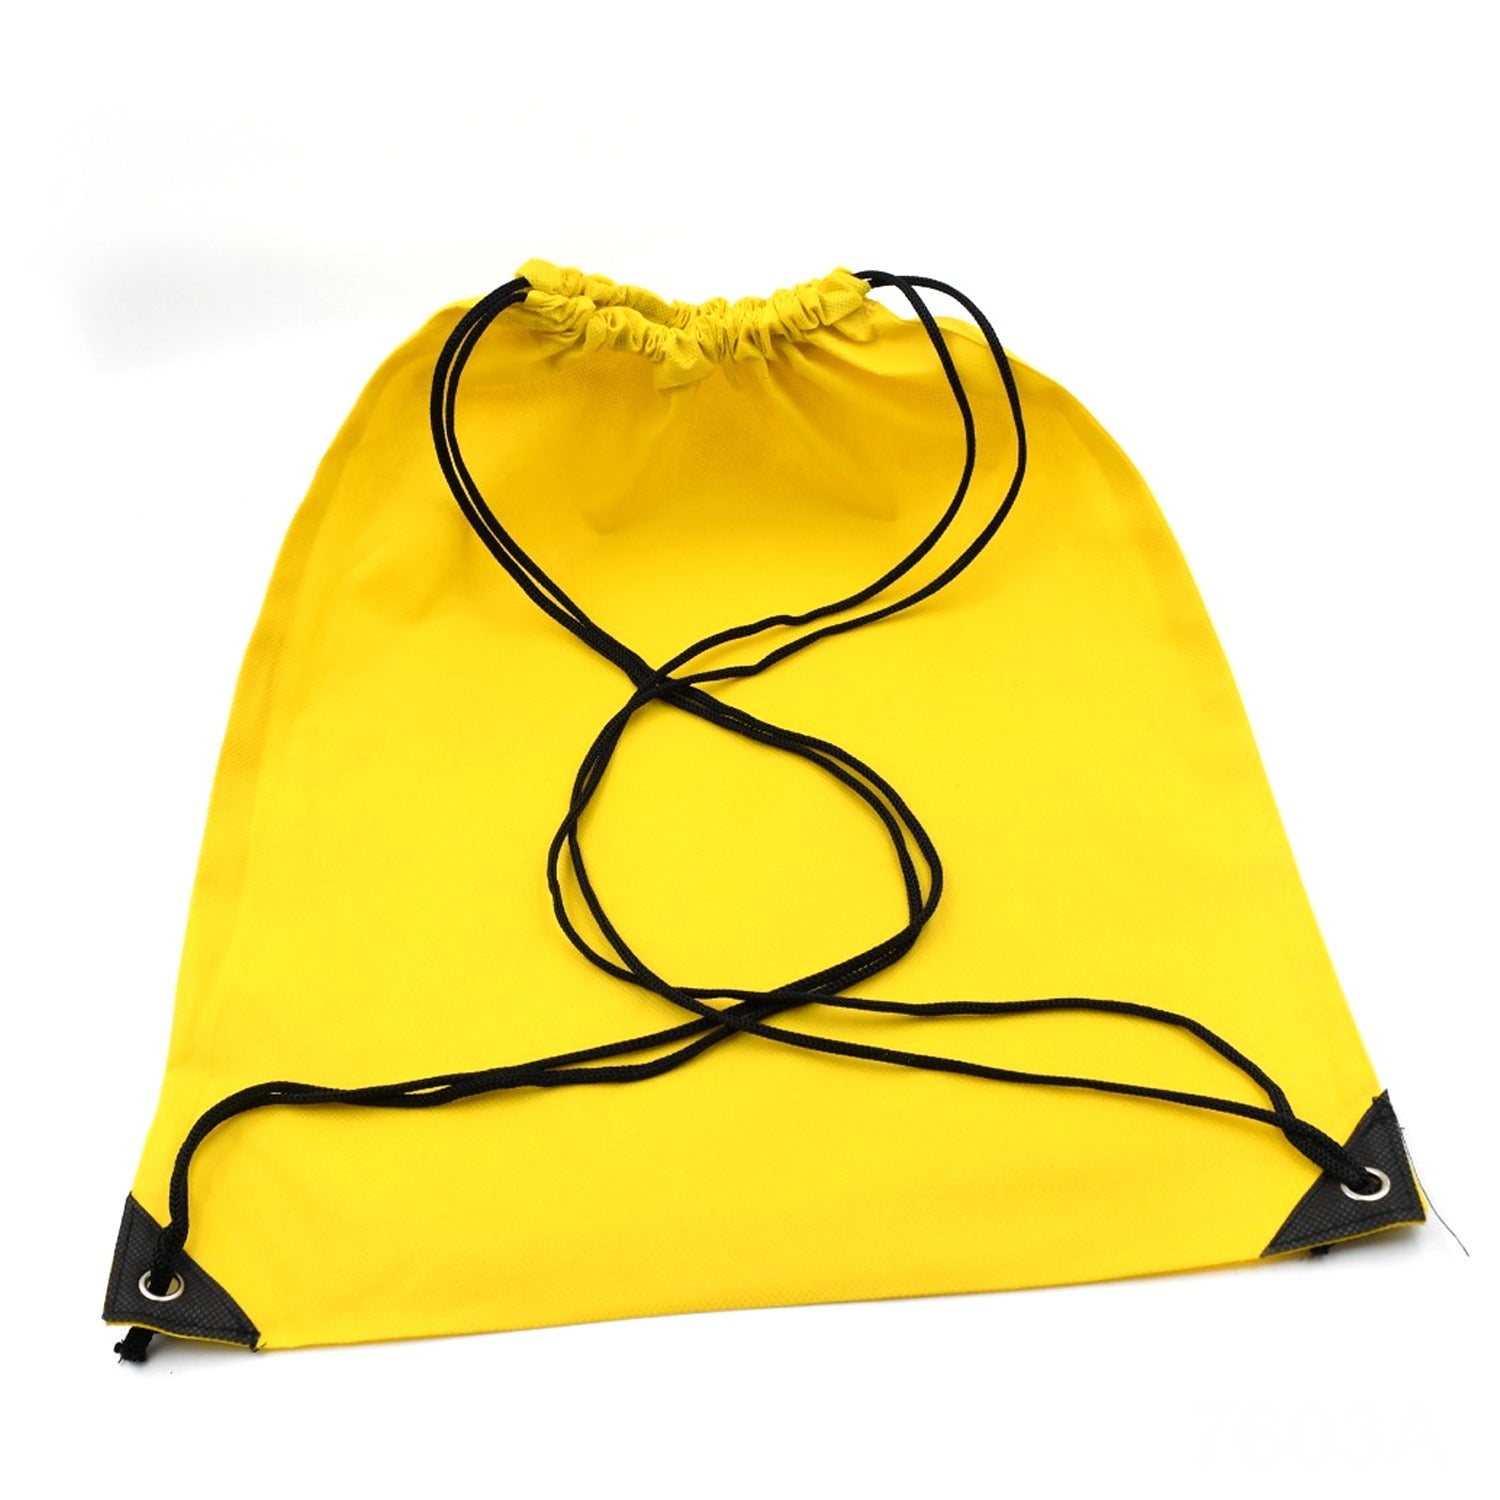 7603a Sport Bag Drawstring Backpack Sports High Quality String Bag Sport Gym Sack pack for Women Men Large